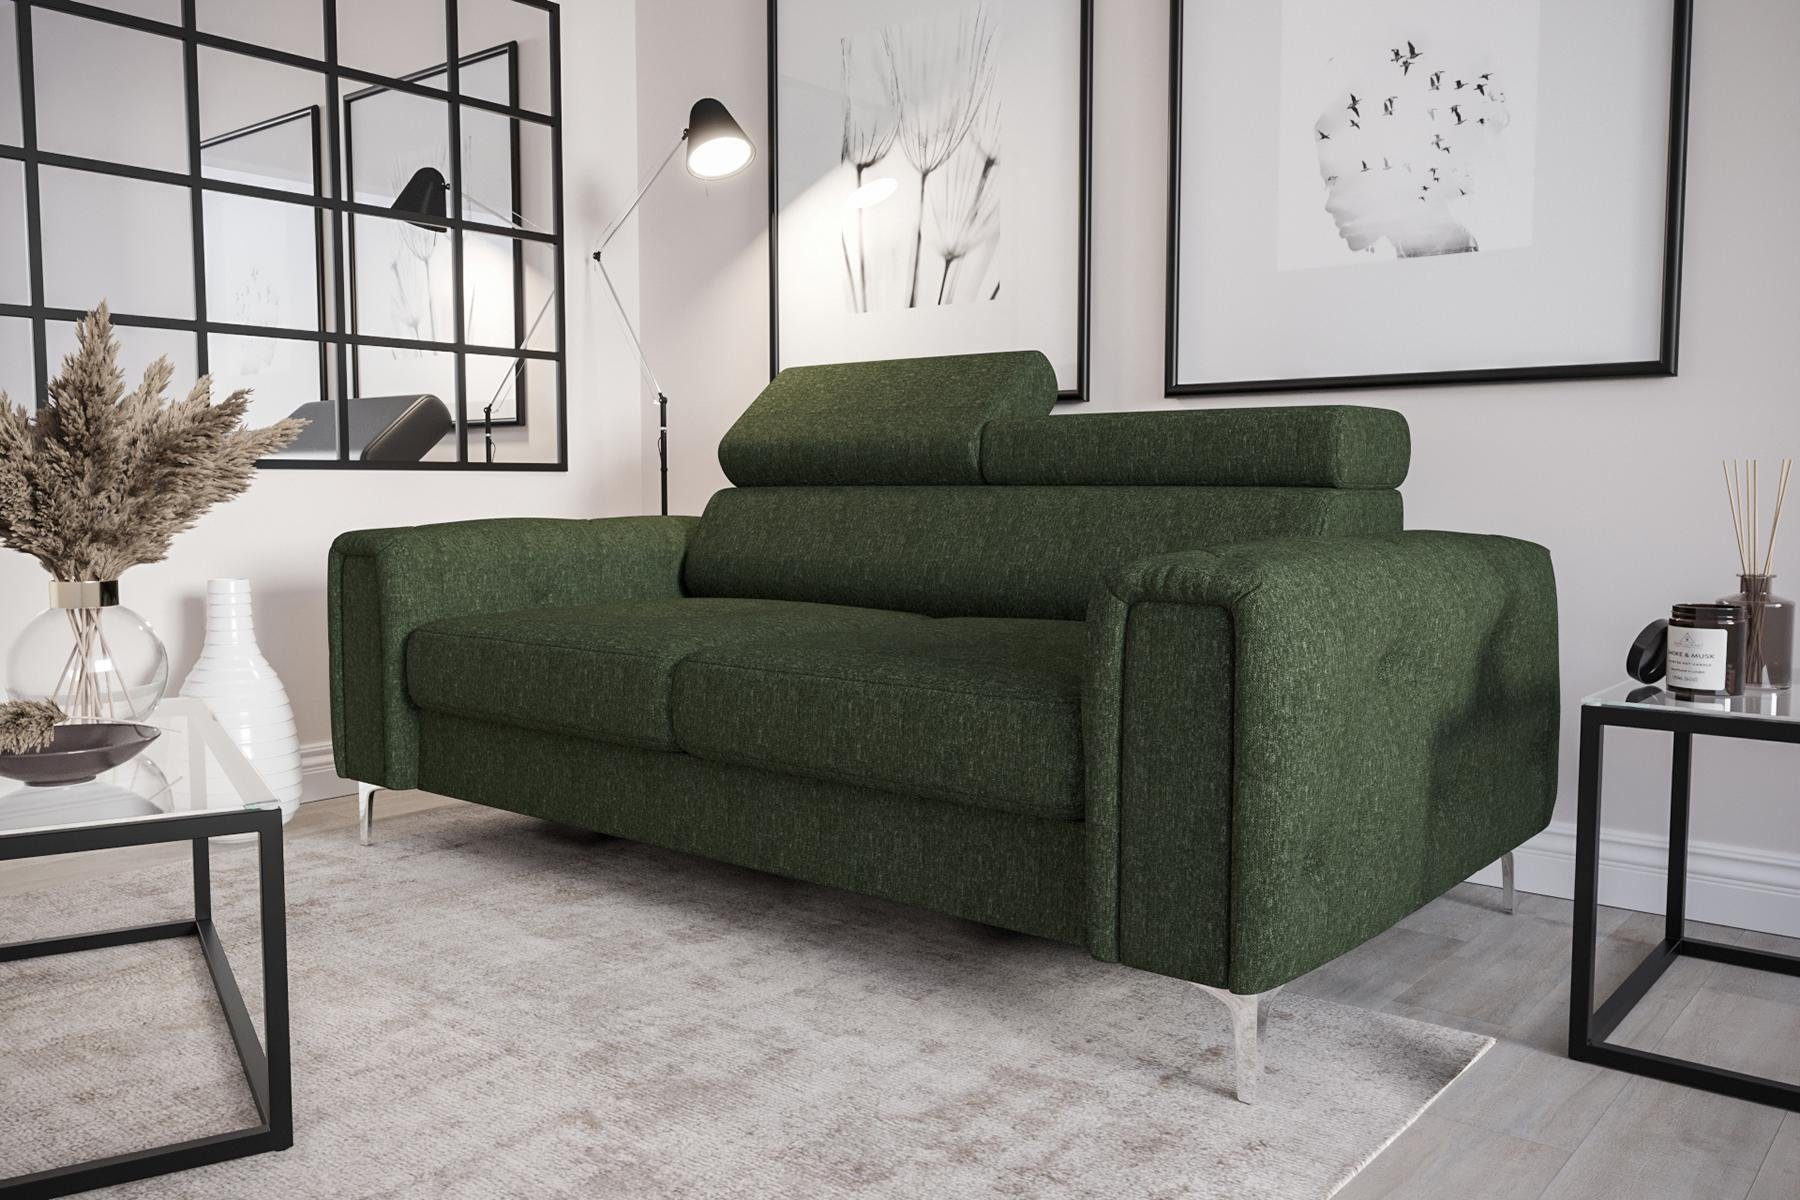 JVmoebel Sofa Designer 2-Sitzer Sofa Couchen Luxus Polster Möbel Sofa Couch Sitz, Made in Europe Grün | Grün | Grün